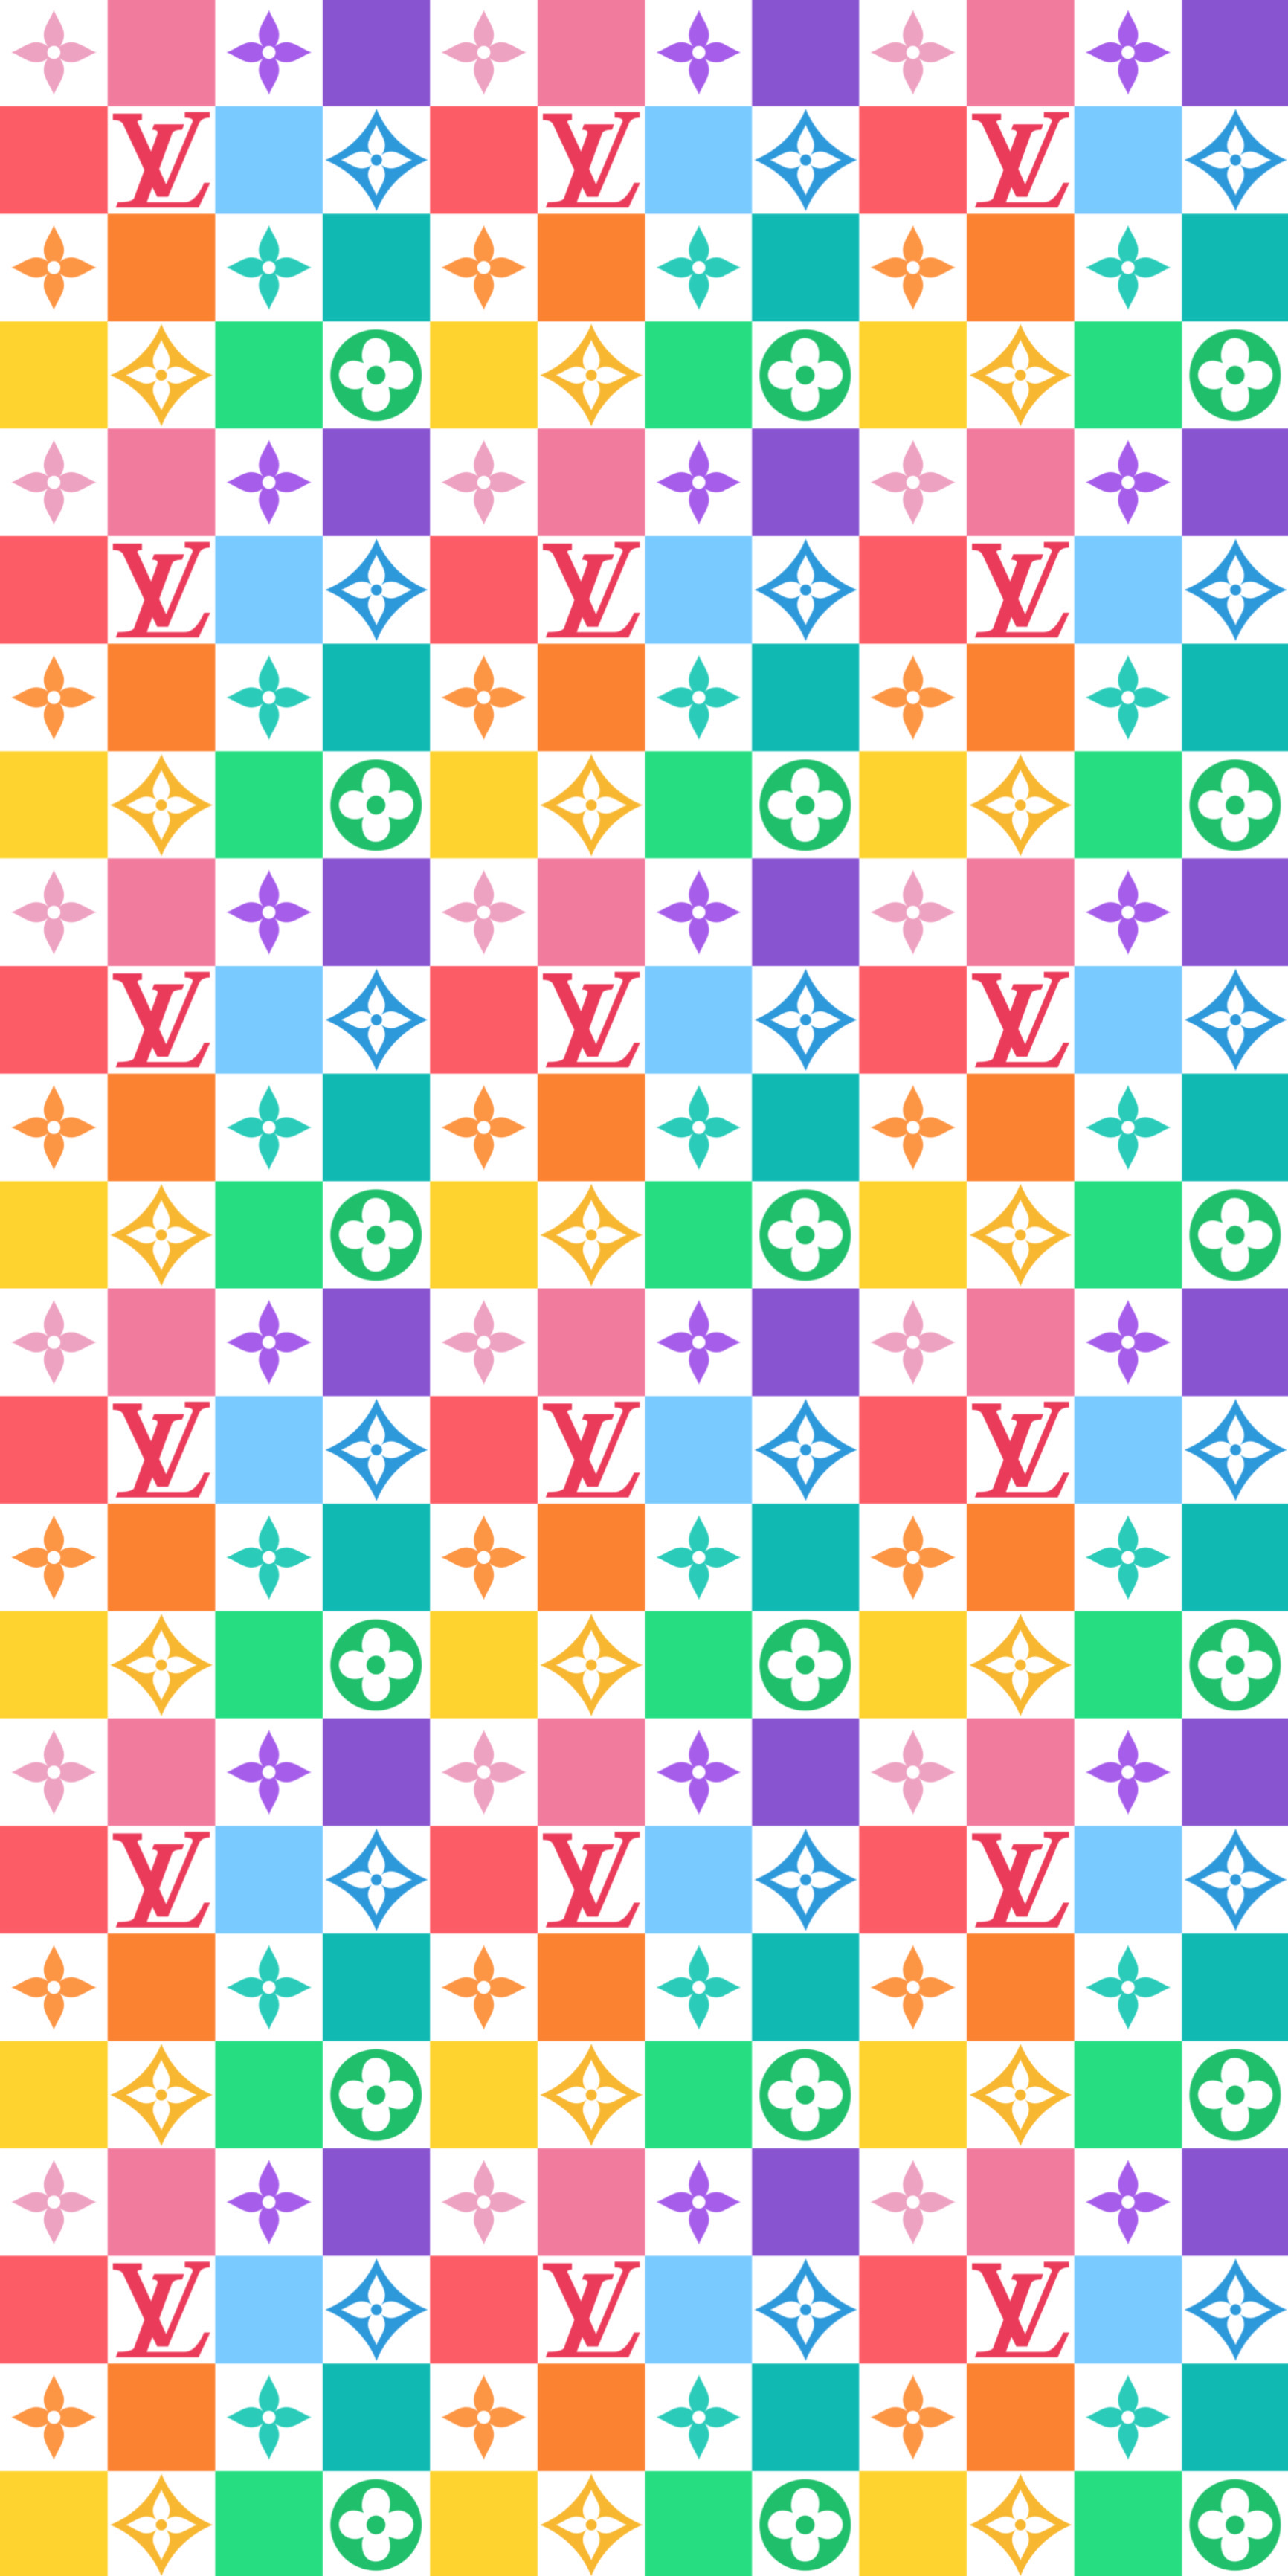 Louis Vuitton Logo Background by TeVesMuyNerviosa on DeviantArt